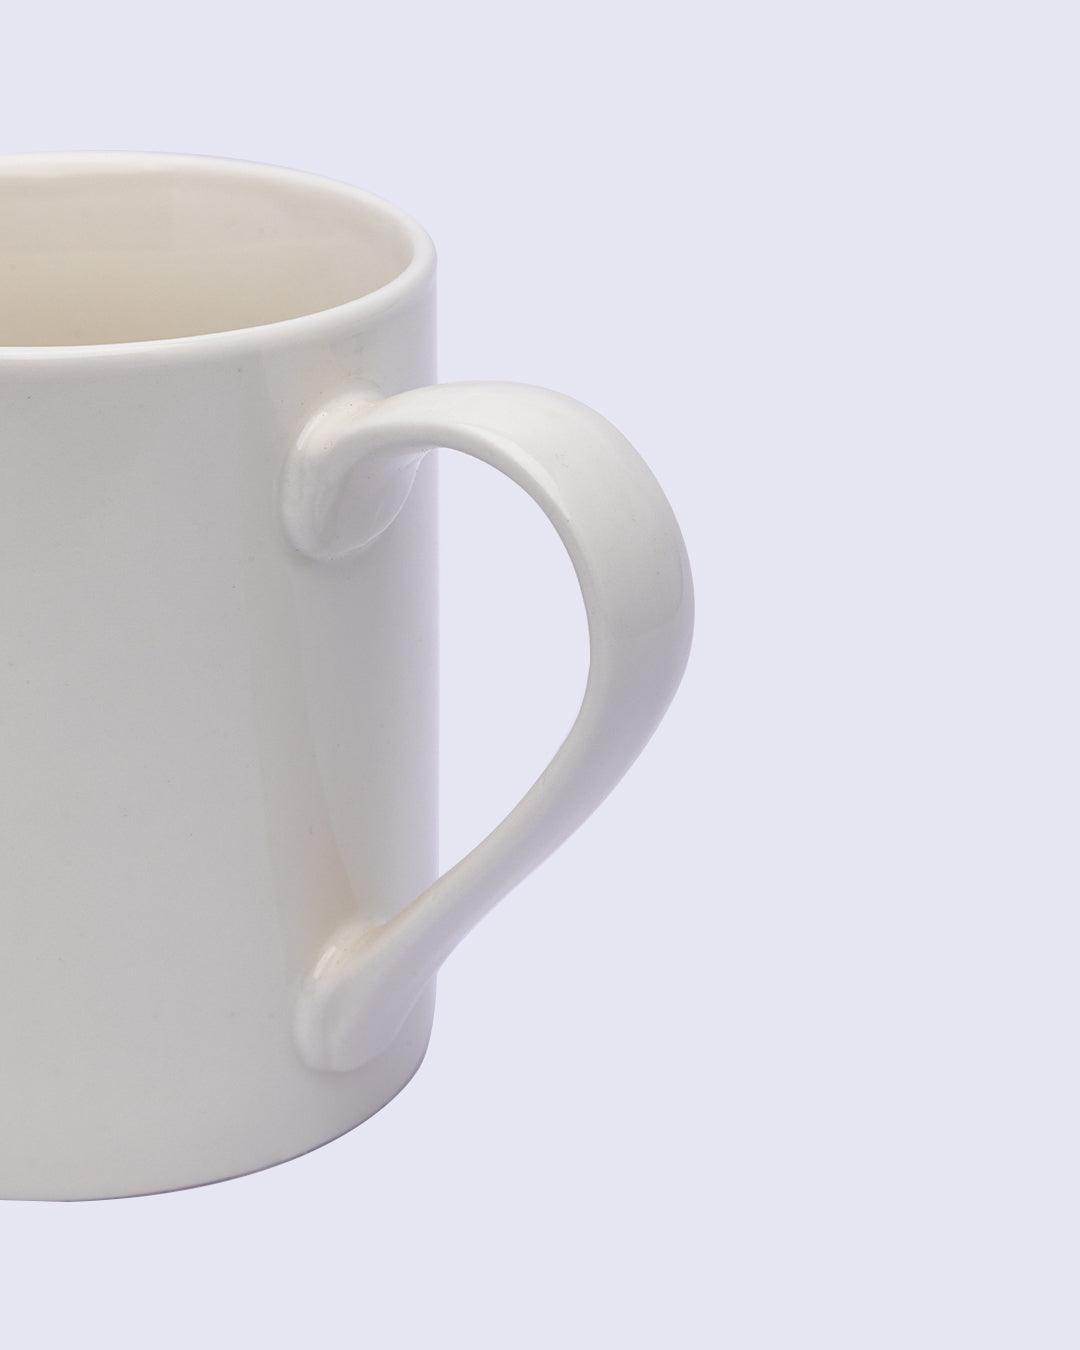 Mug, with Quotation, White, Ceramic, 500 mL - MARKET 99